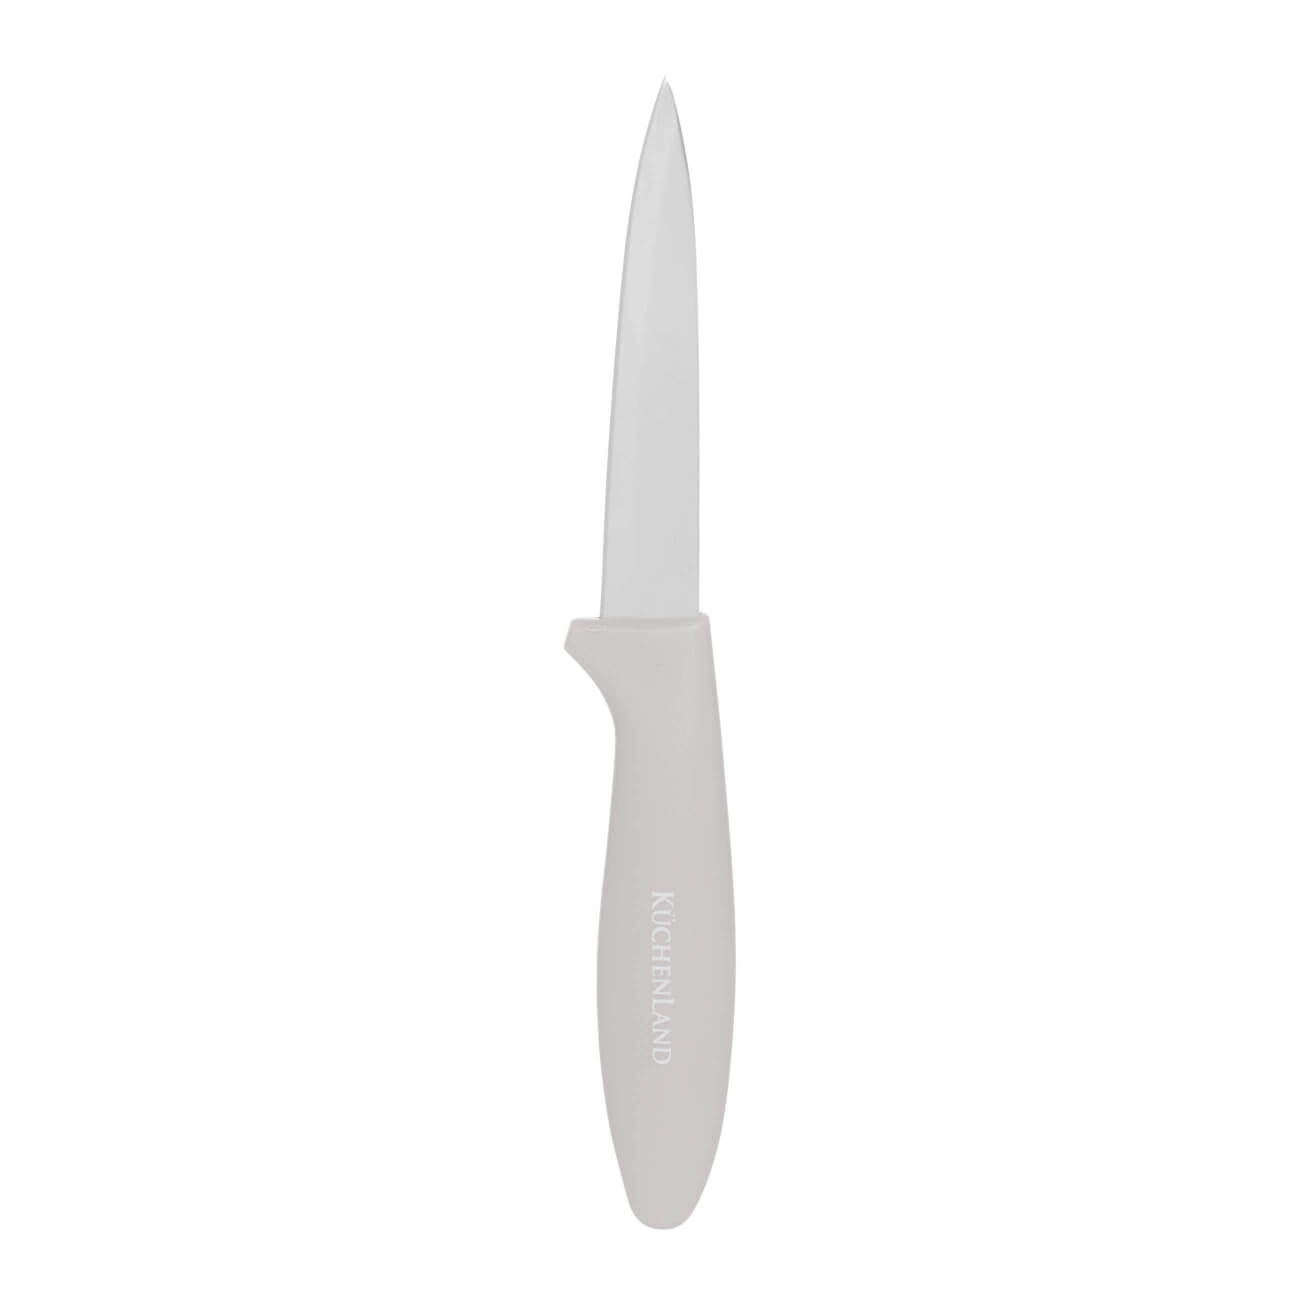 Нож для чистки овощей, 9 см, сталь/пластик, серо-коричневый, Regular kuchenland нож для чистки овощей 9 см сталь пластик actual